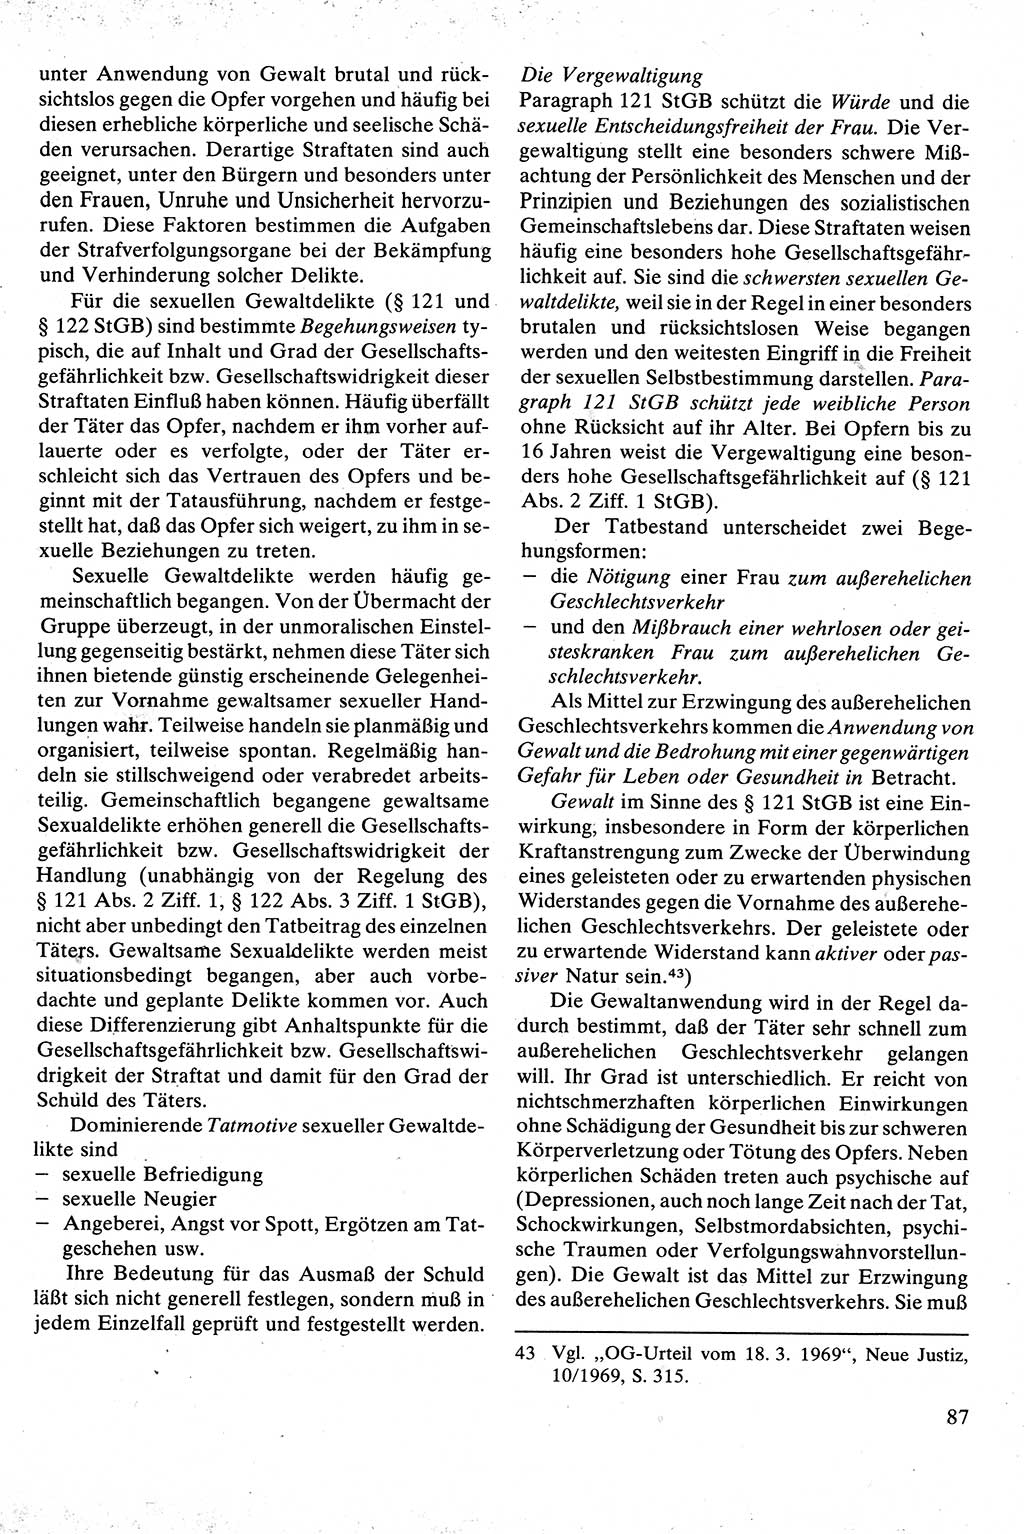 Strafrecht [Deutsche Demokratische Republik (DDR)], Besonderer Teil, Lehrbuch 1981, Seite 87 (Strafr. DDR BT Lb. 1981, S. 87)